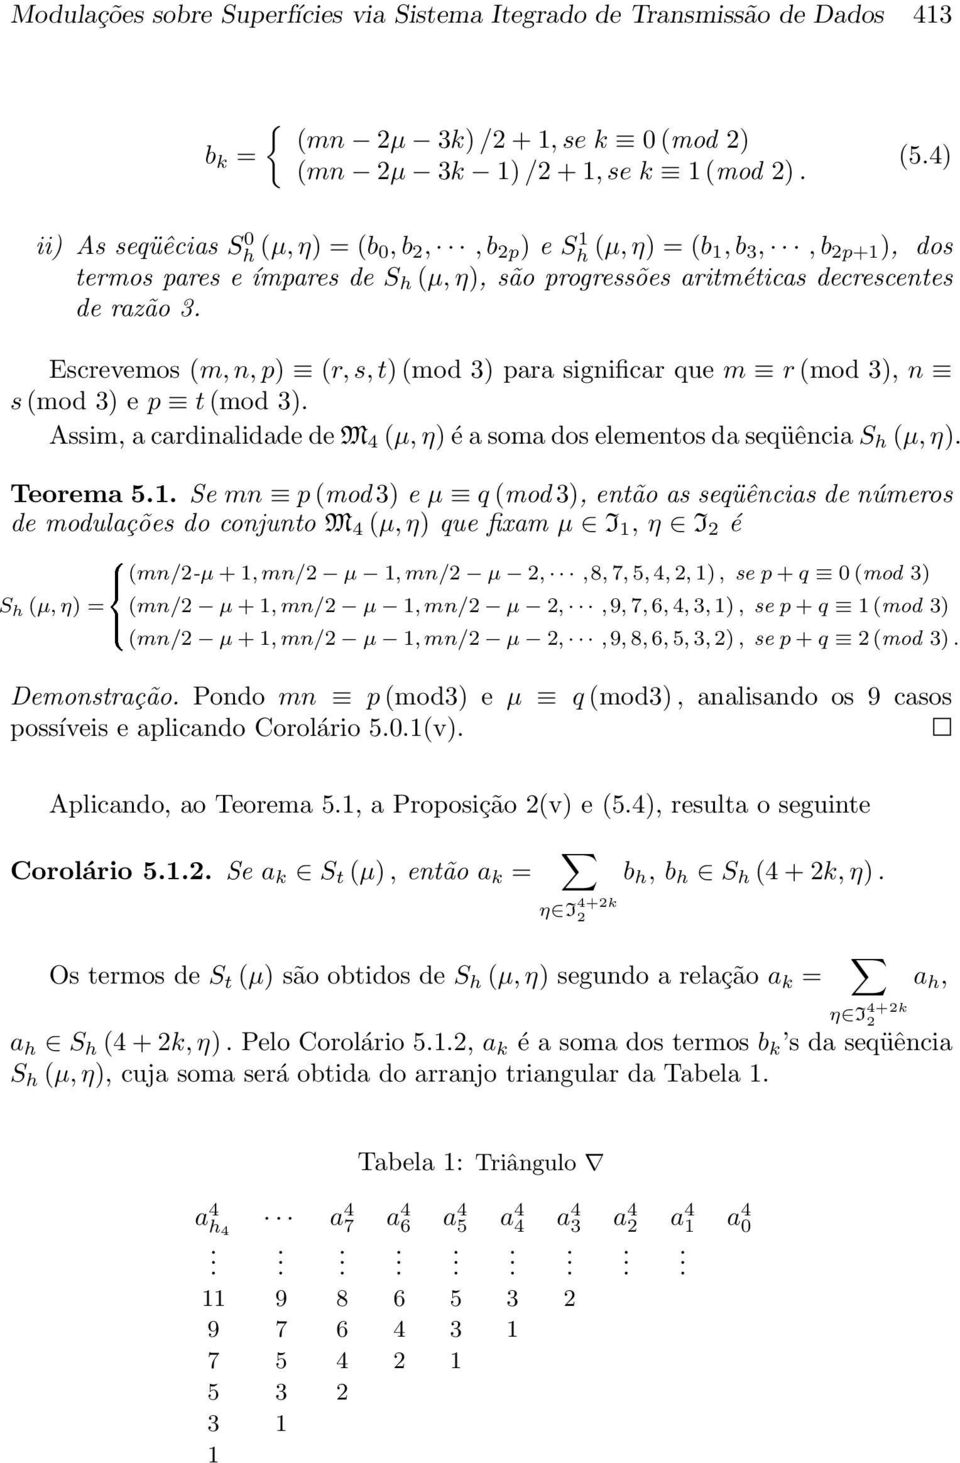 cardinalidade de M (µ,η) é a soma dos elementos da seqüência S h (µ,η) Teorema Se p(mod 3) e µ q (mod 3), então as seqüências de números de modulações do conjunto M (µ,η) que fixam µ I, η I é S h (µ,